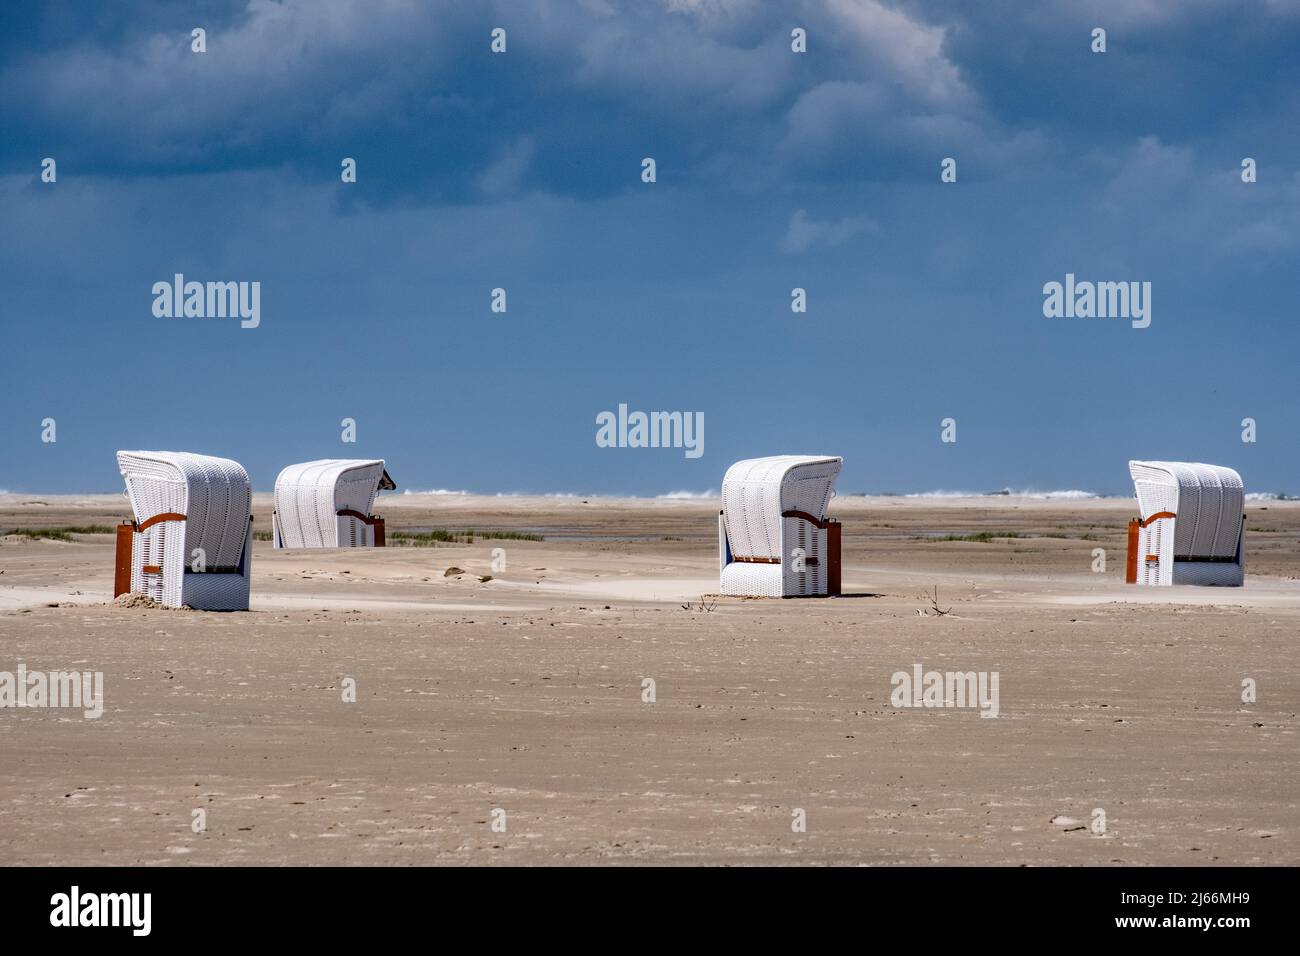 Impressionen von der Insel Borkum - Nordstrand beim Dünenbudje mit vier weißen Strandkörben. Stock Photo